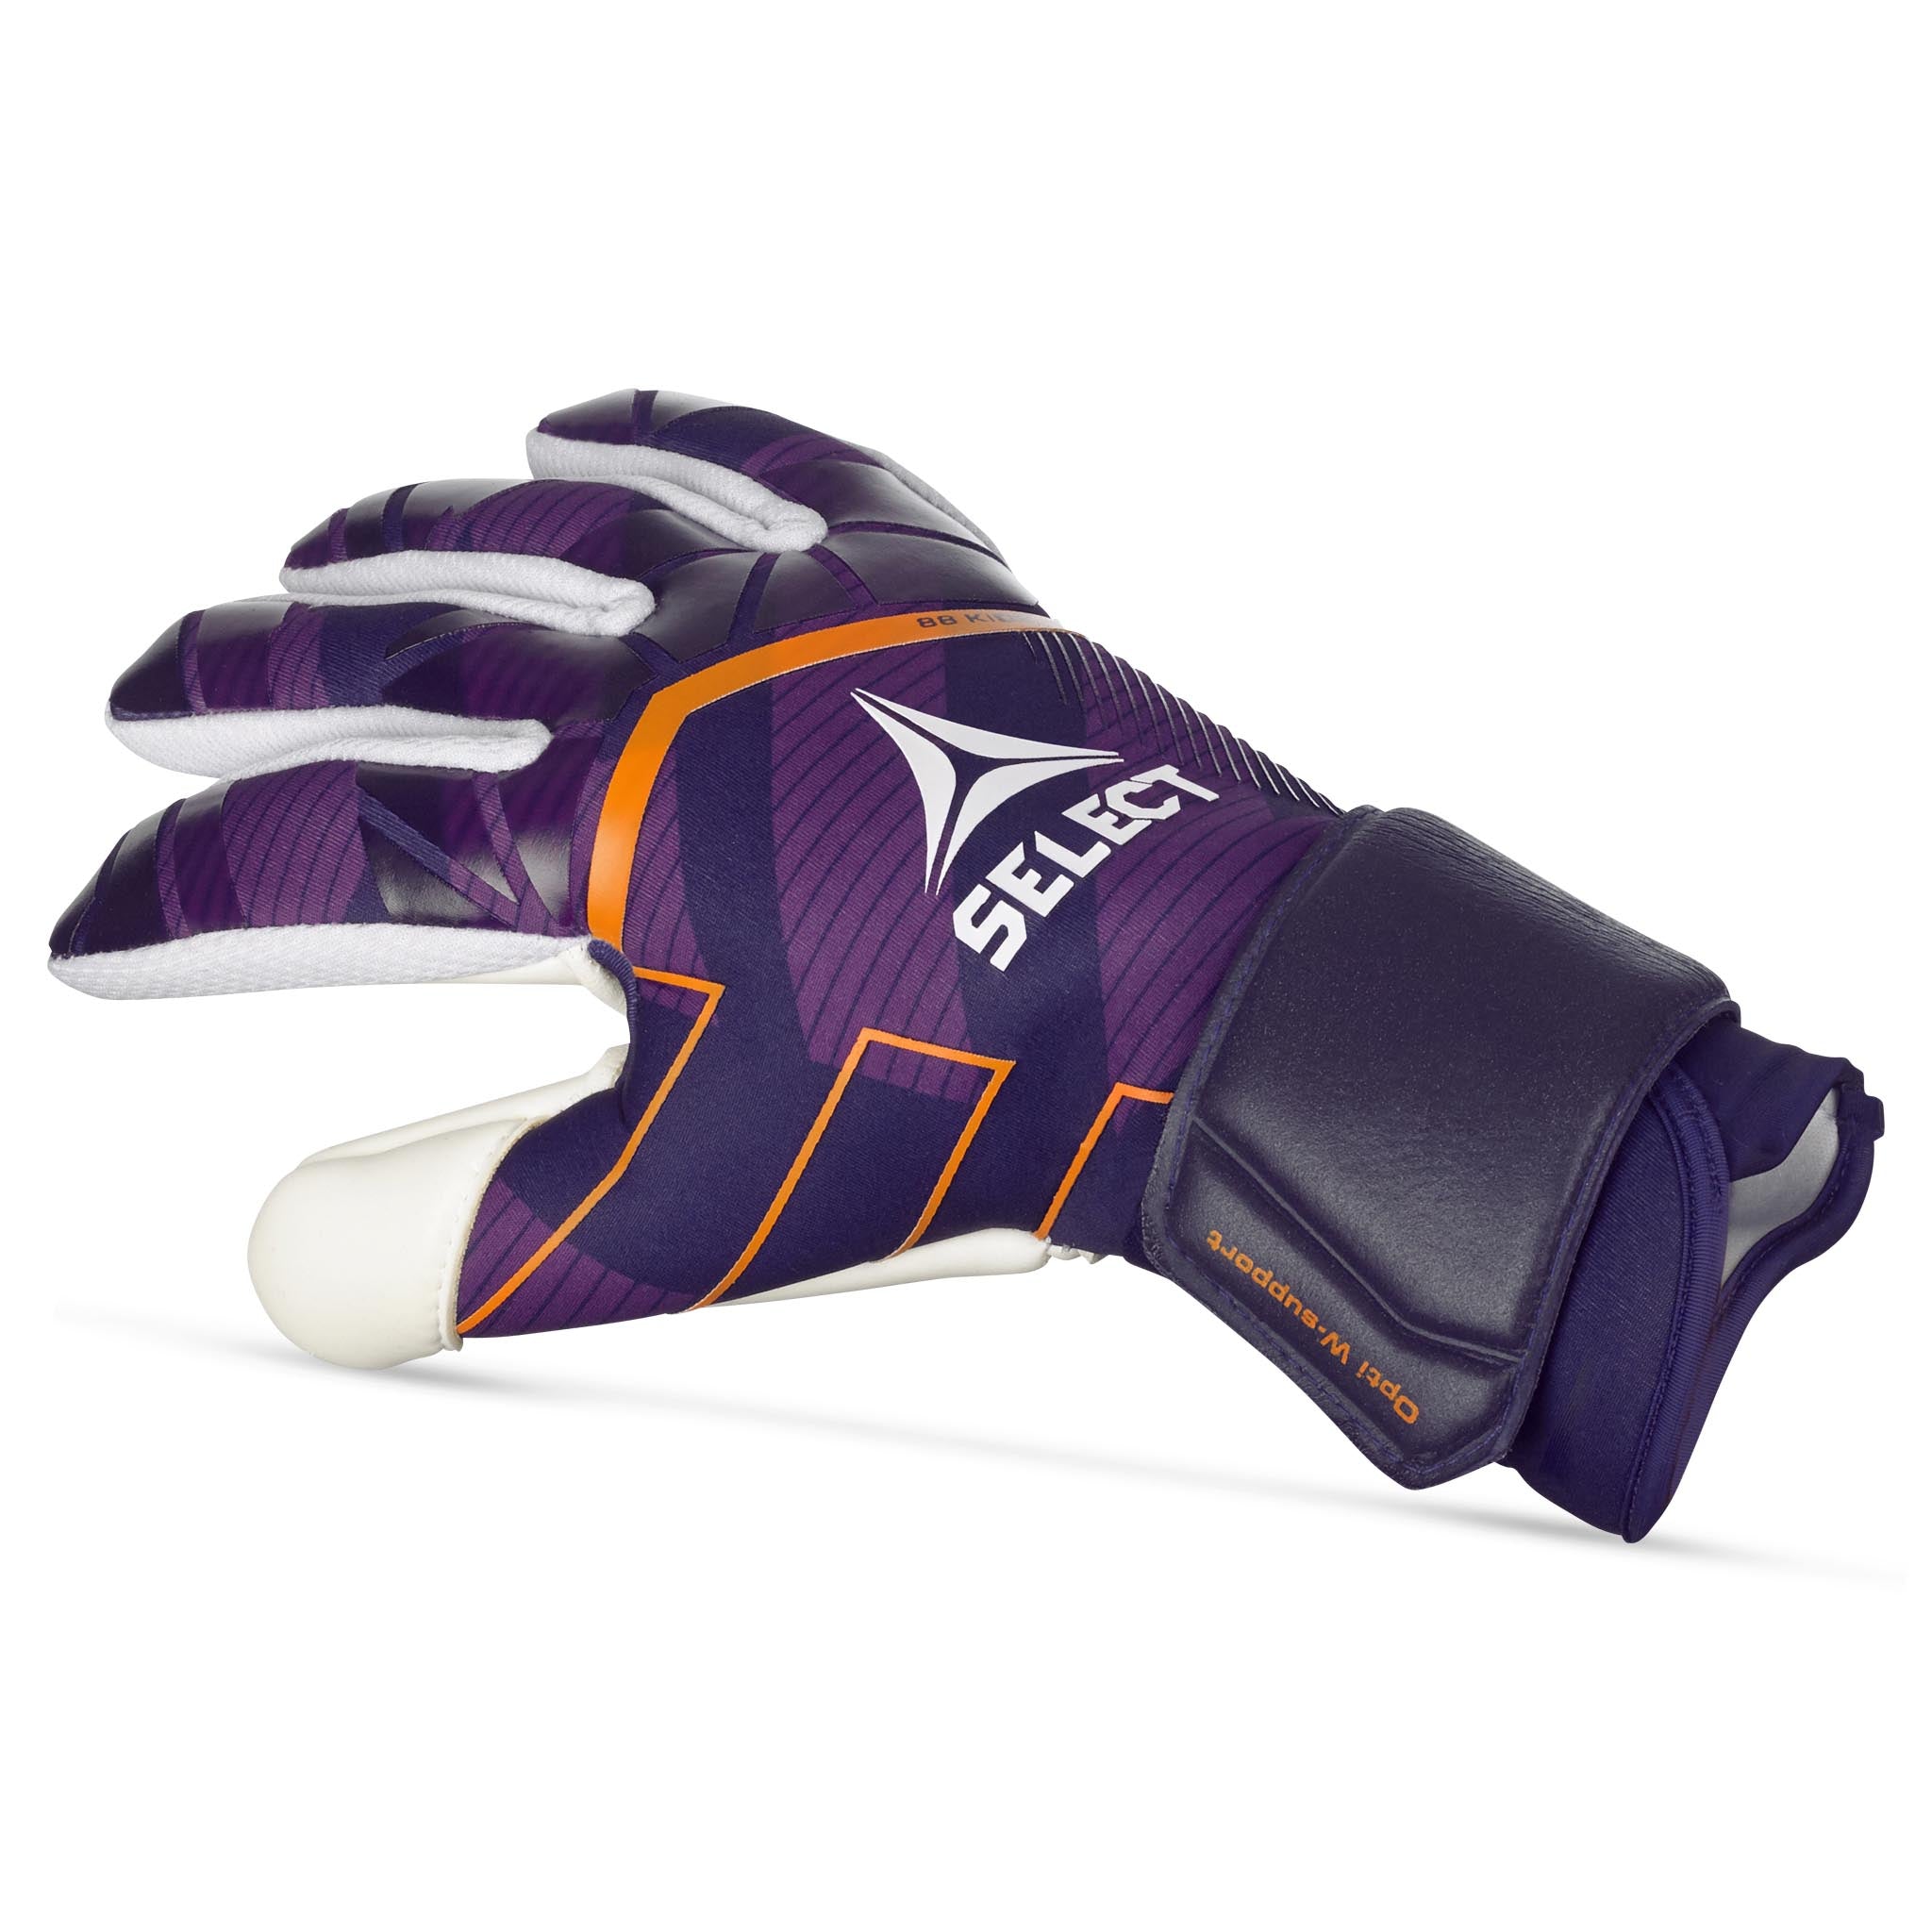 Goalkeeper gloves - 88 Kids #colour_purple/white